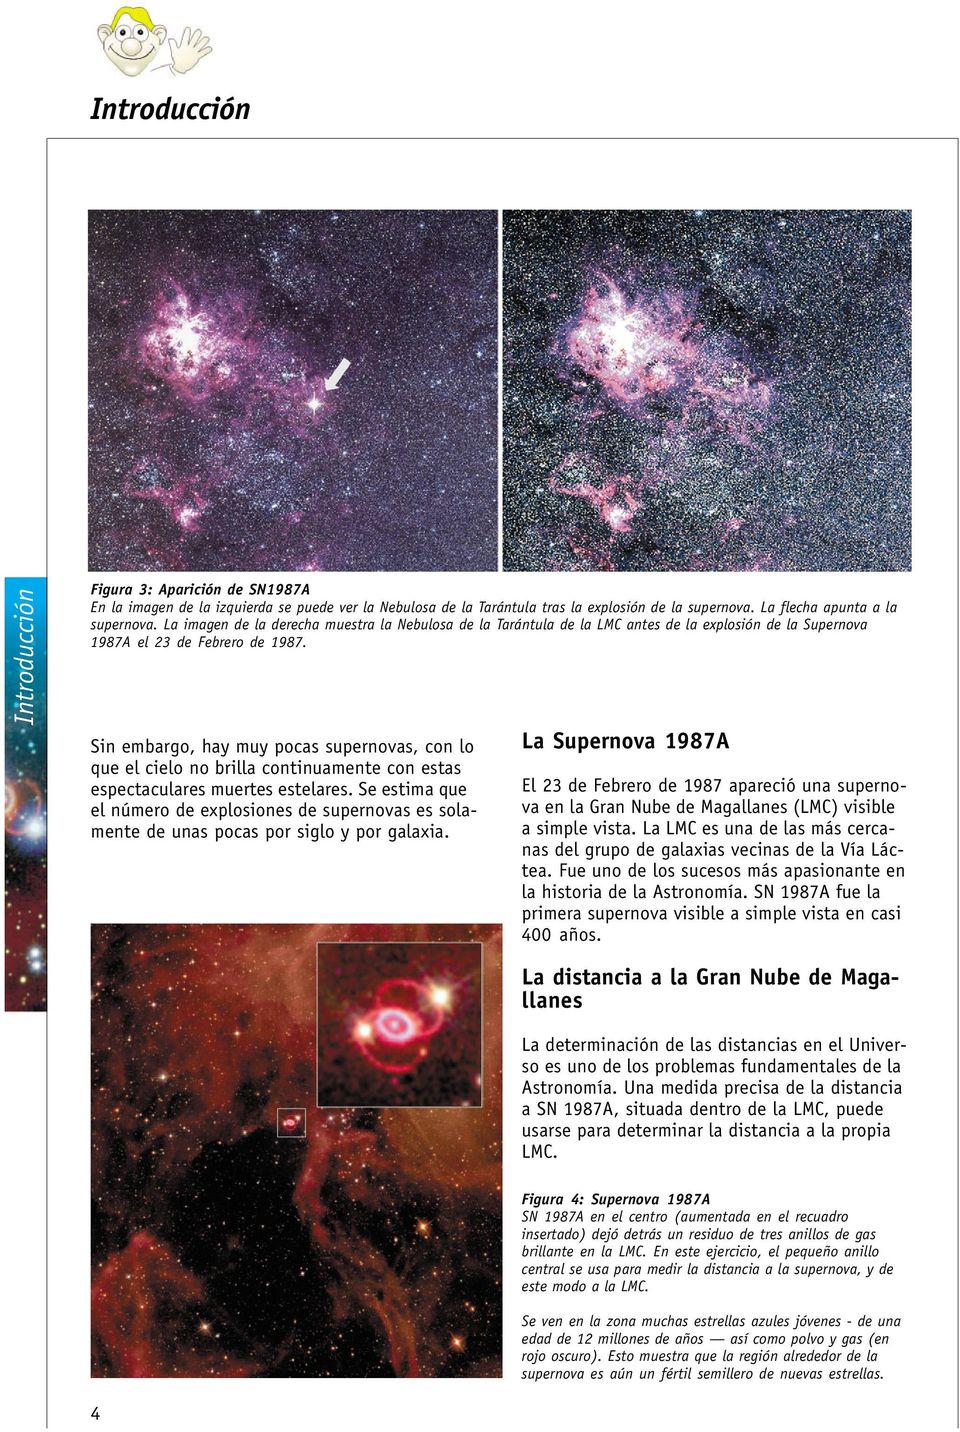 Sin embargo, hay muy pocas supernovas, con lo que el cielo no brilla continuamente con estas espectaculares muertes estelares.